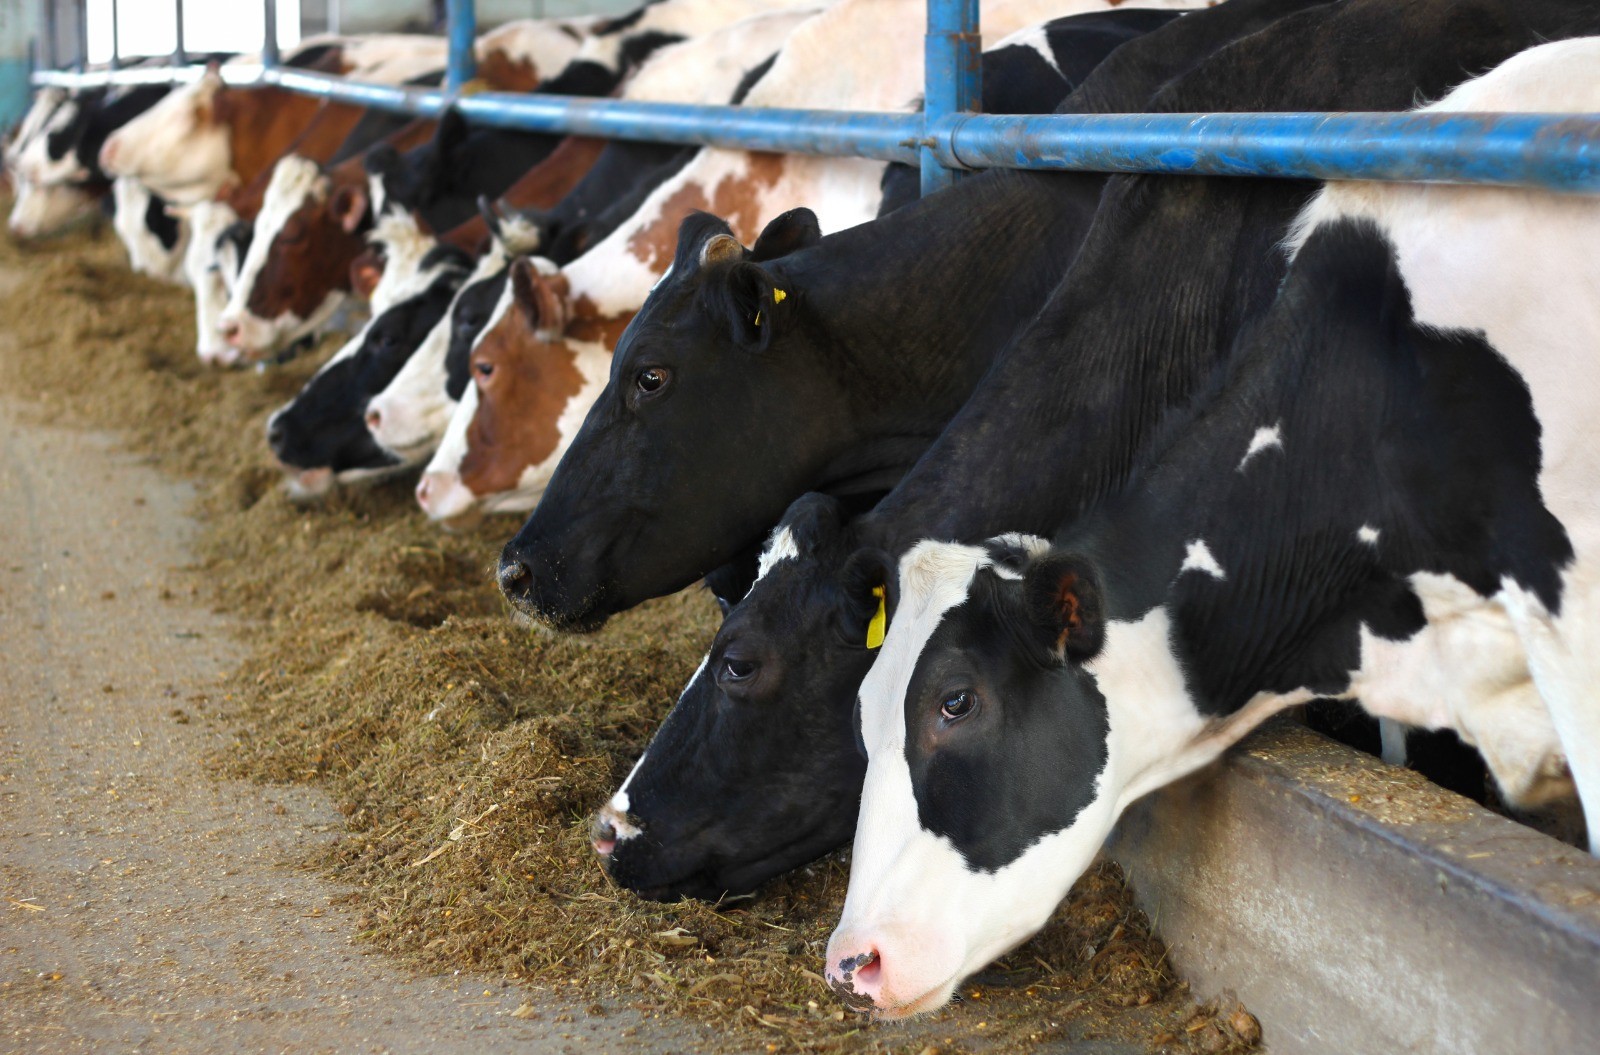 Investimento de R$ 3 milhões pretende incentivar bem-estar animal na produção de leite para multinacional em MG; entenda